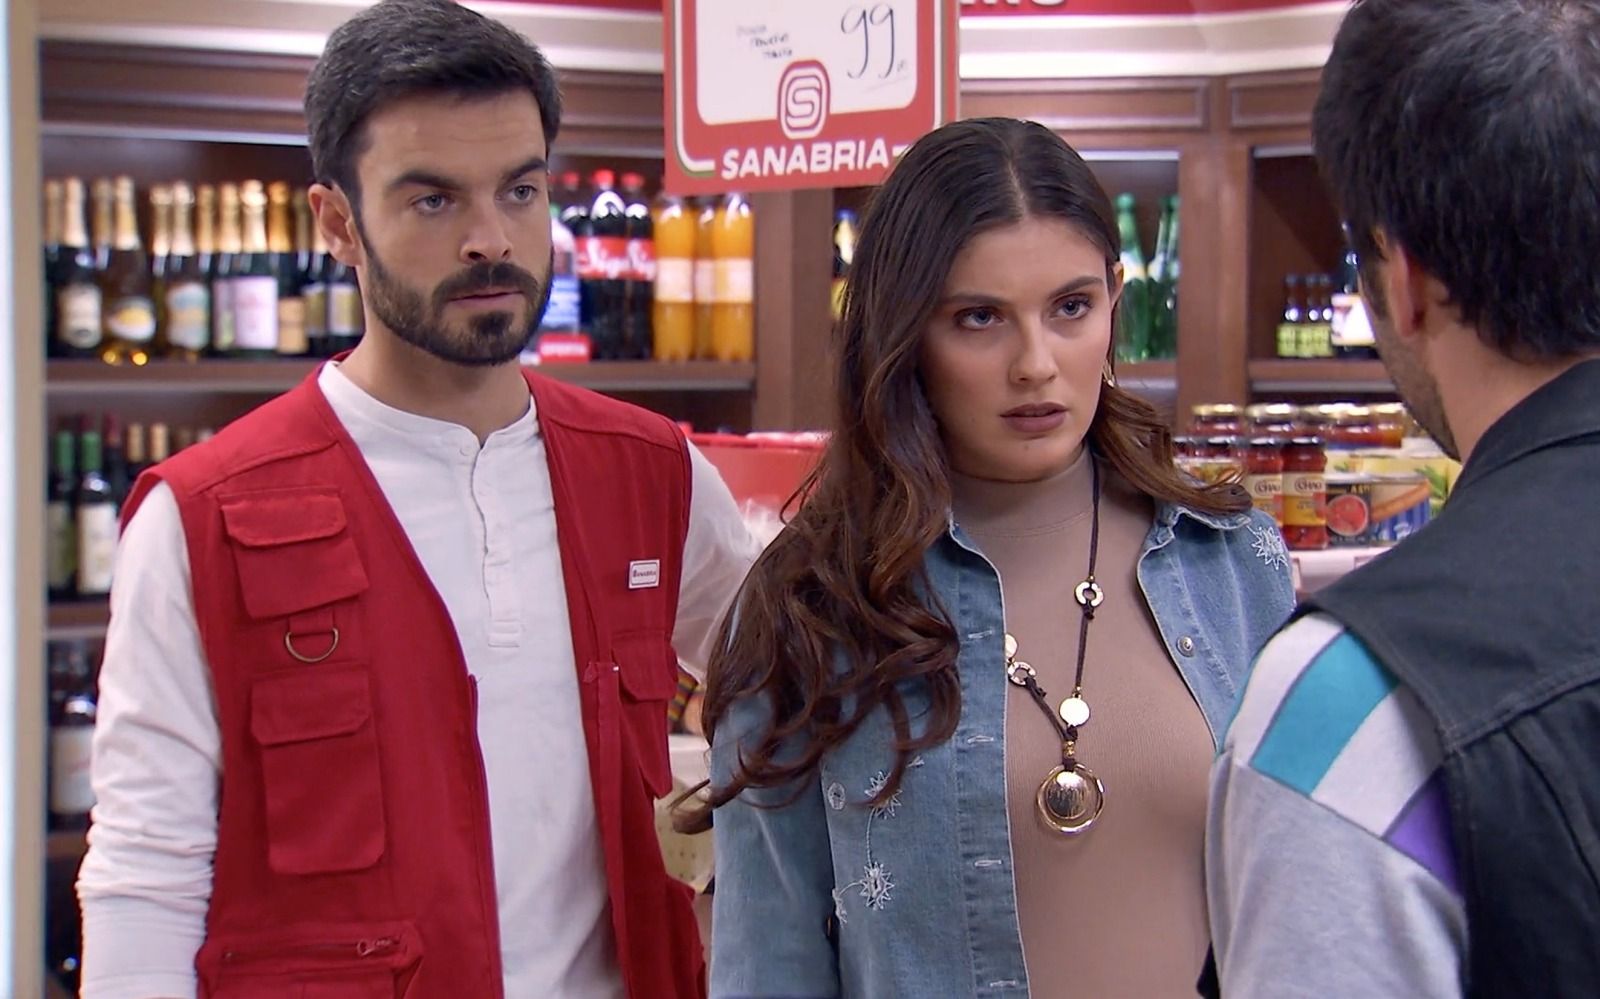 Jorge acude al supermercado para investigar el entorno de Ana Mari